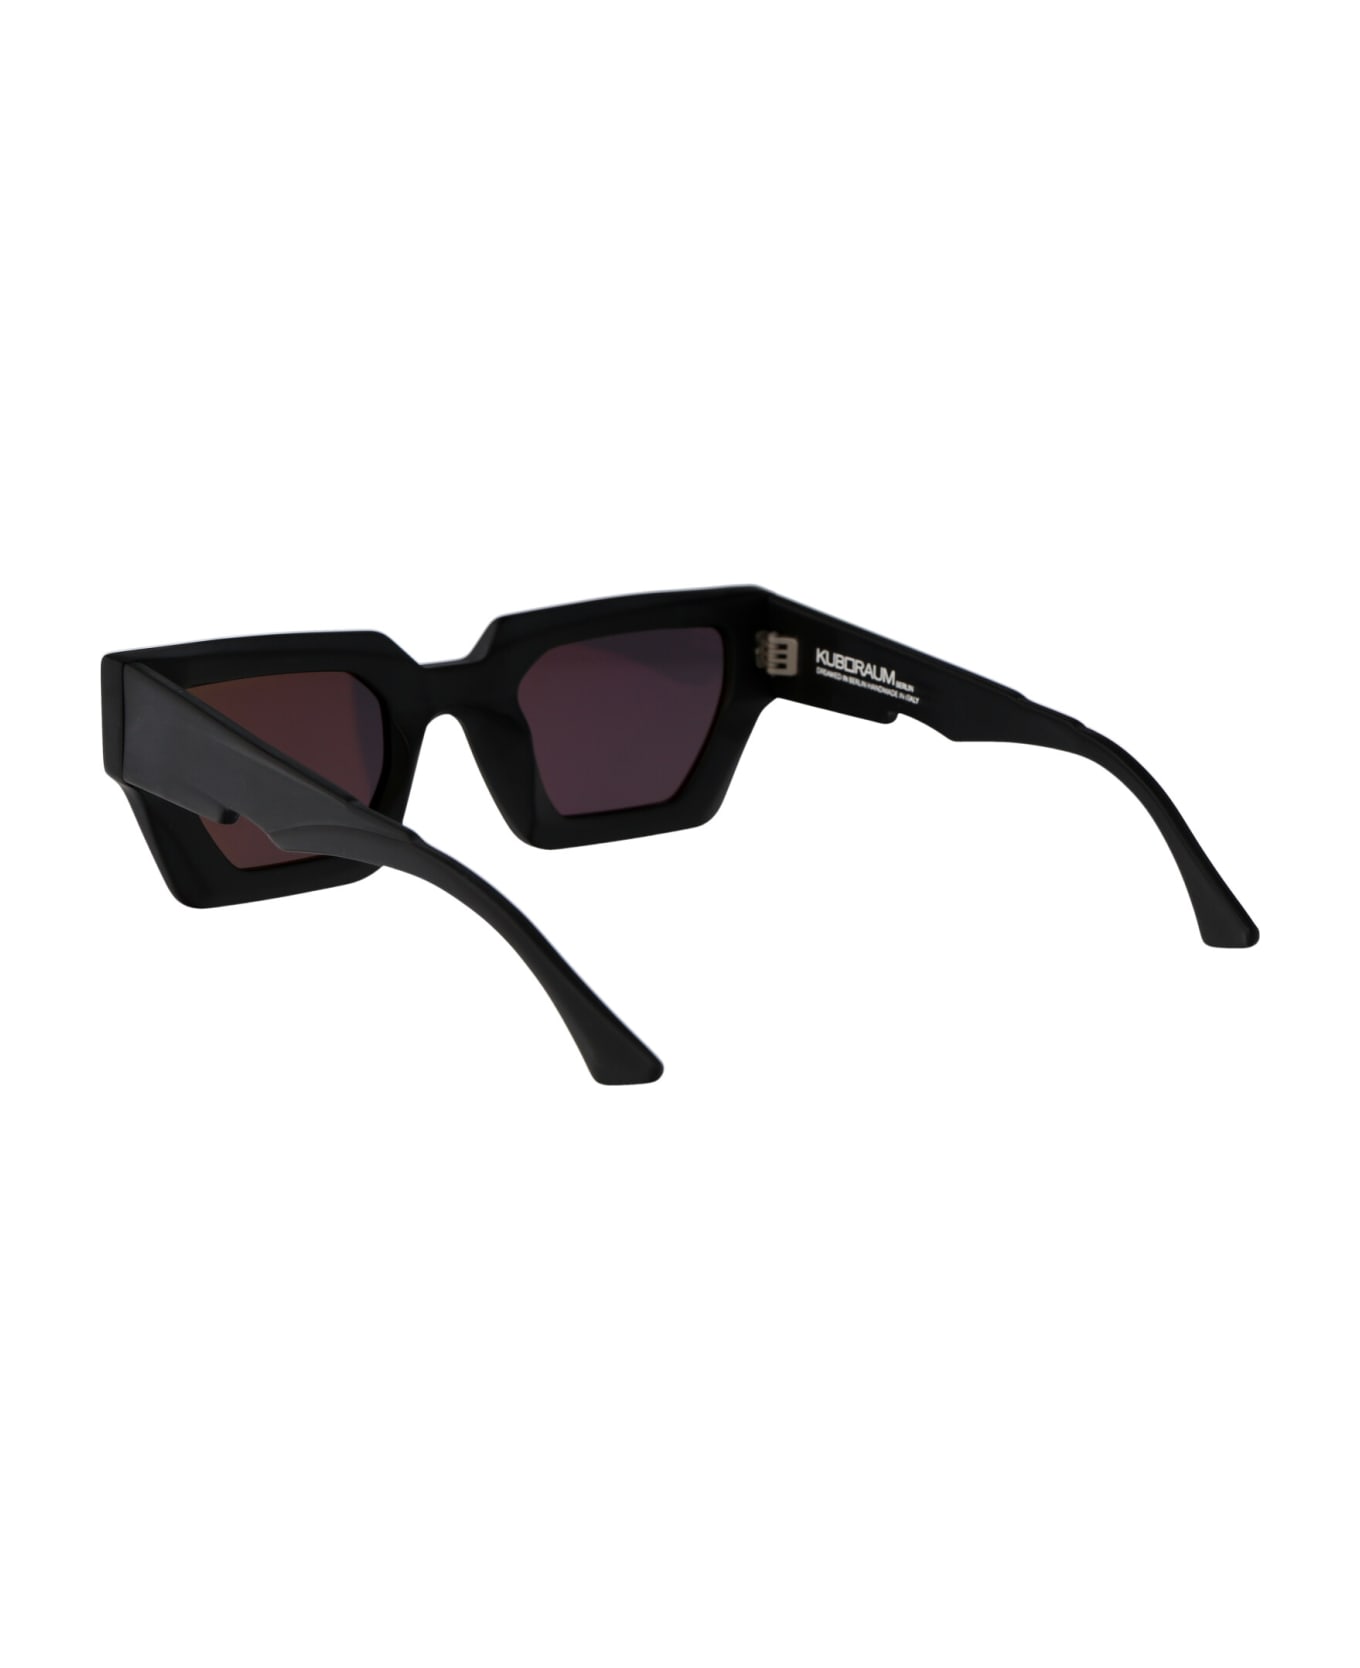 Kuboraum Maske F3 Sunglasses - BM 2grey